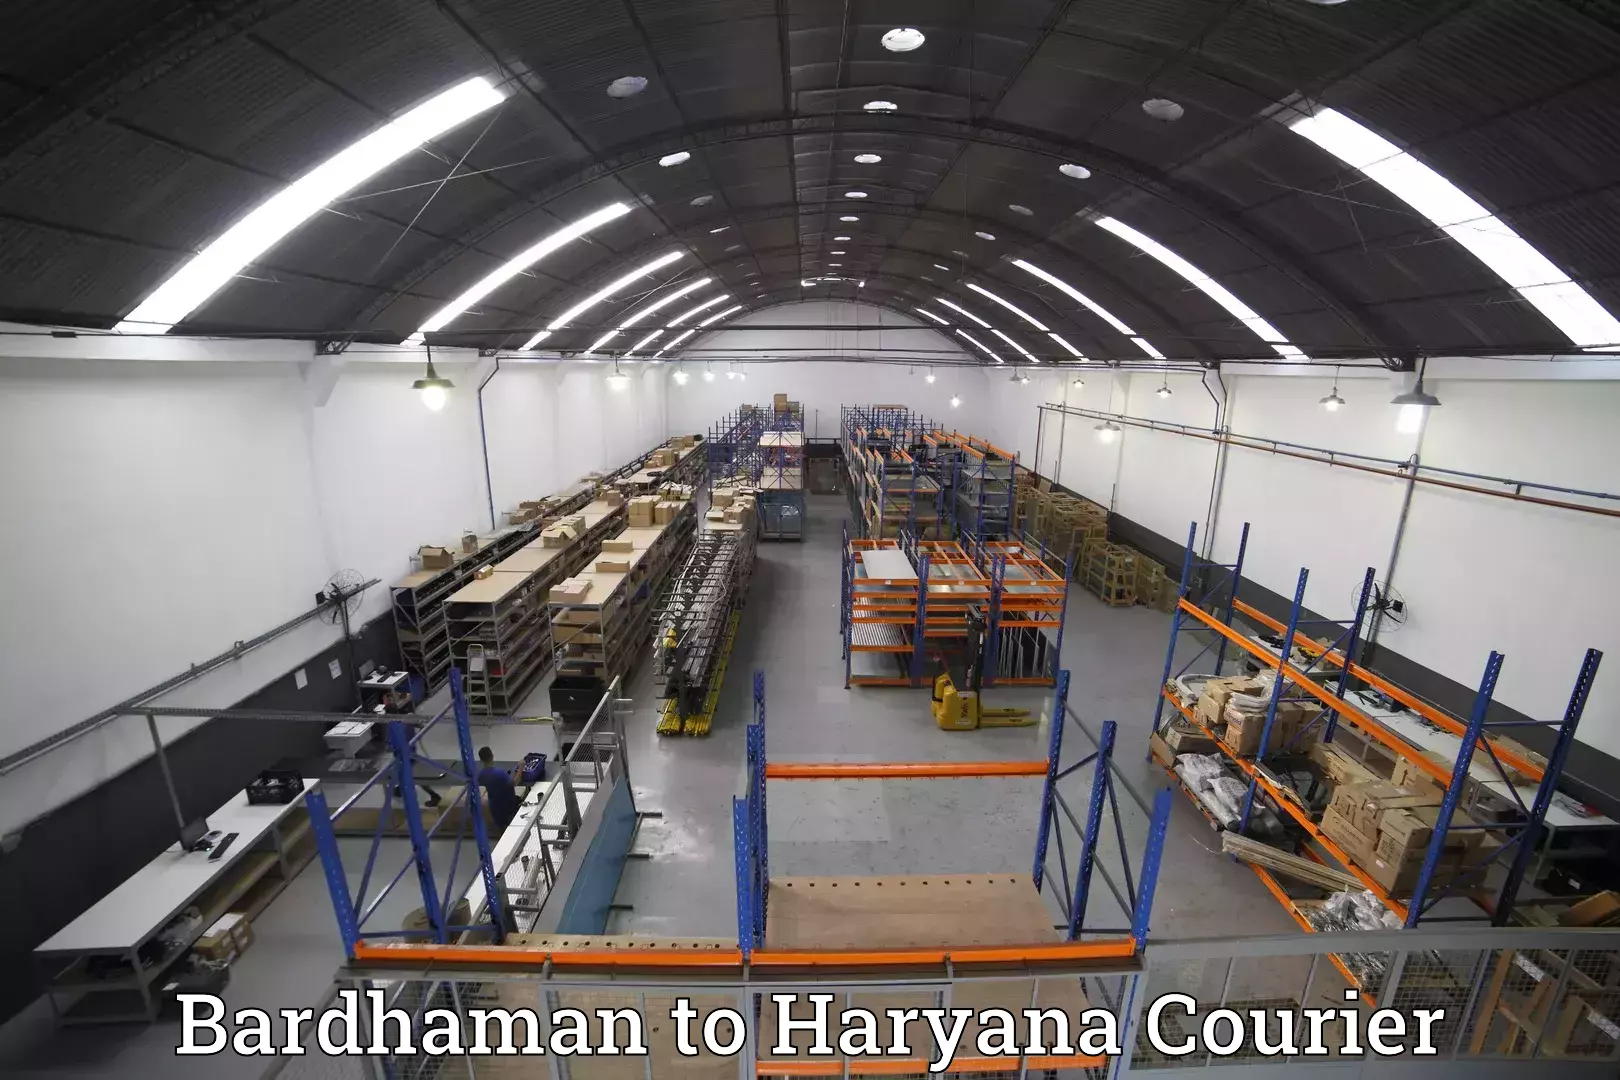 Baggage transport scheduler Bardhaman to Haryana